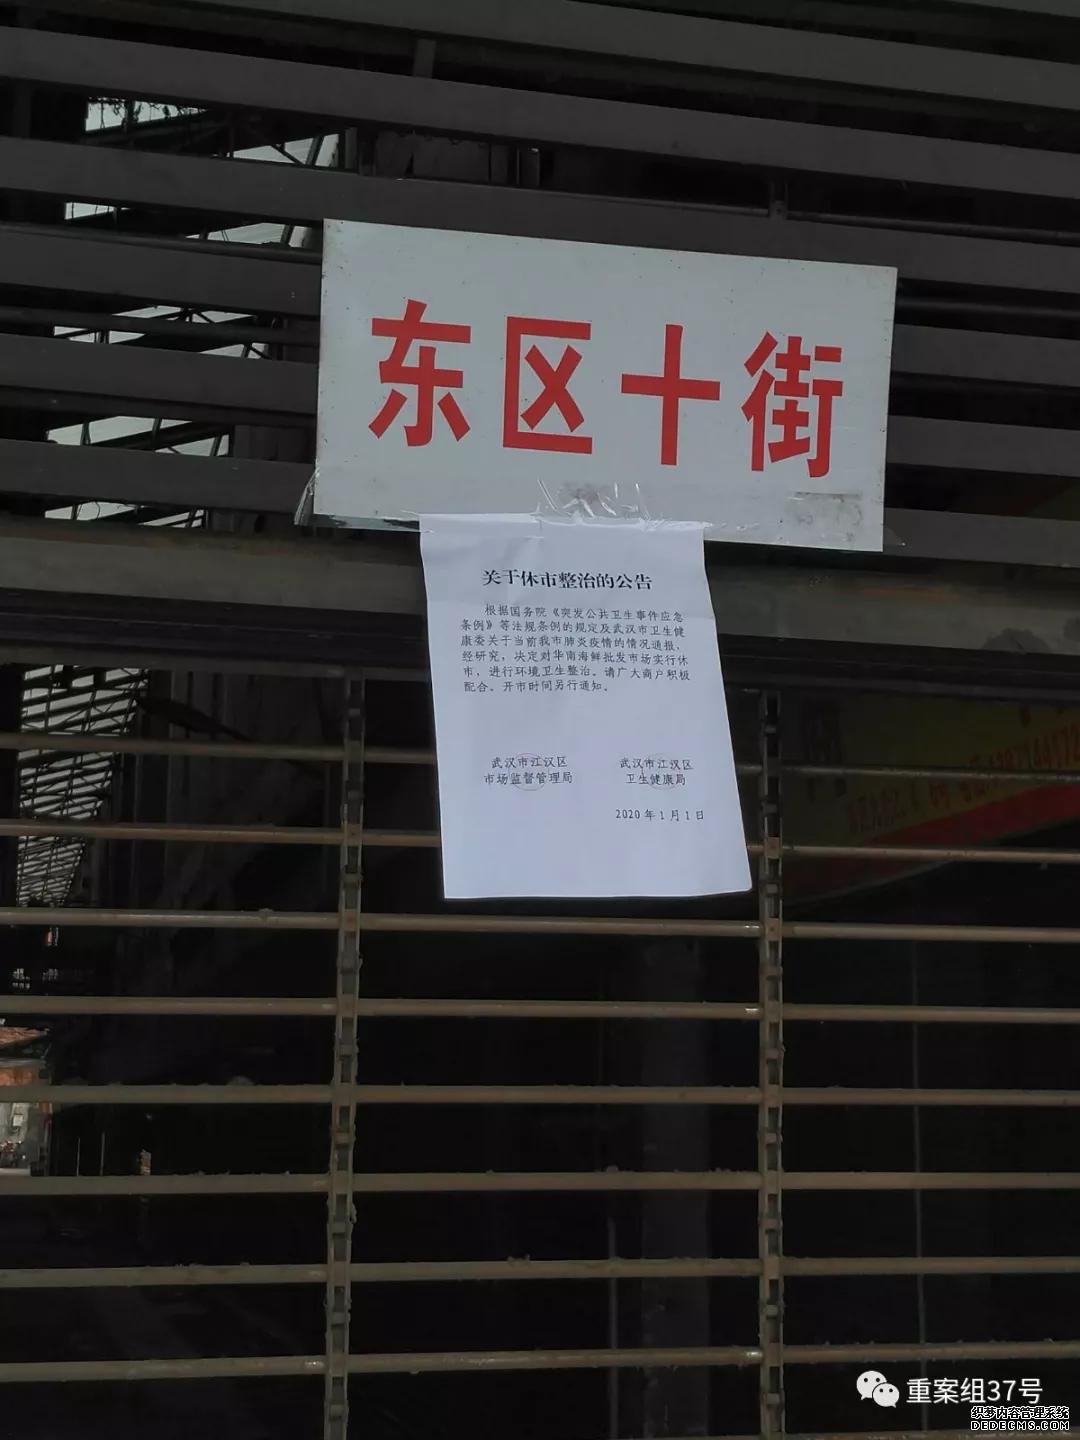 武汉大众畜牧野味确实存在 市场休市后才闭店